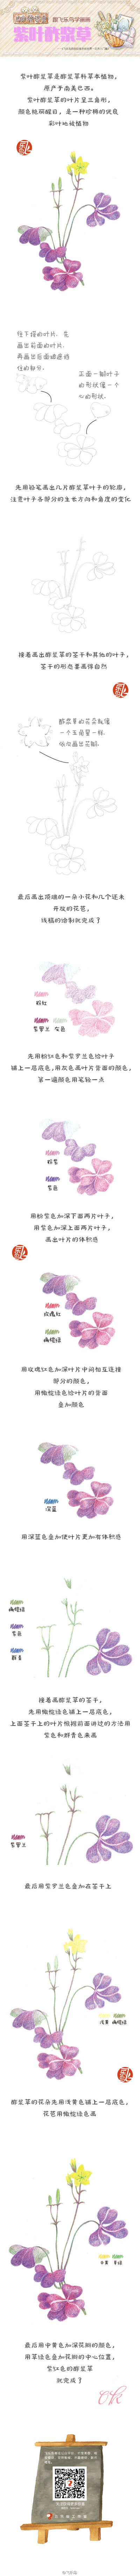 【绘画教程】紫叶酢浆草